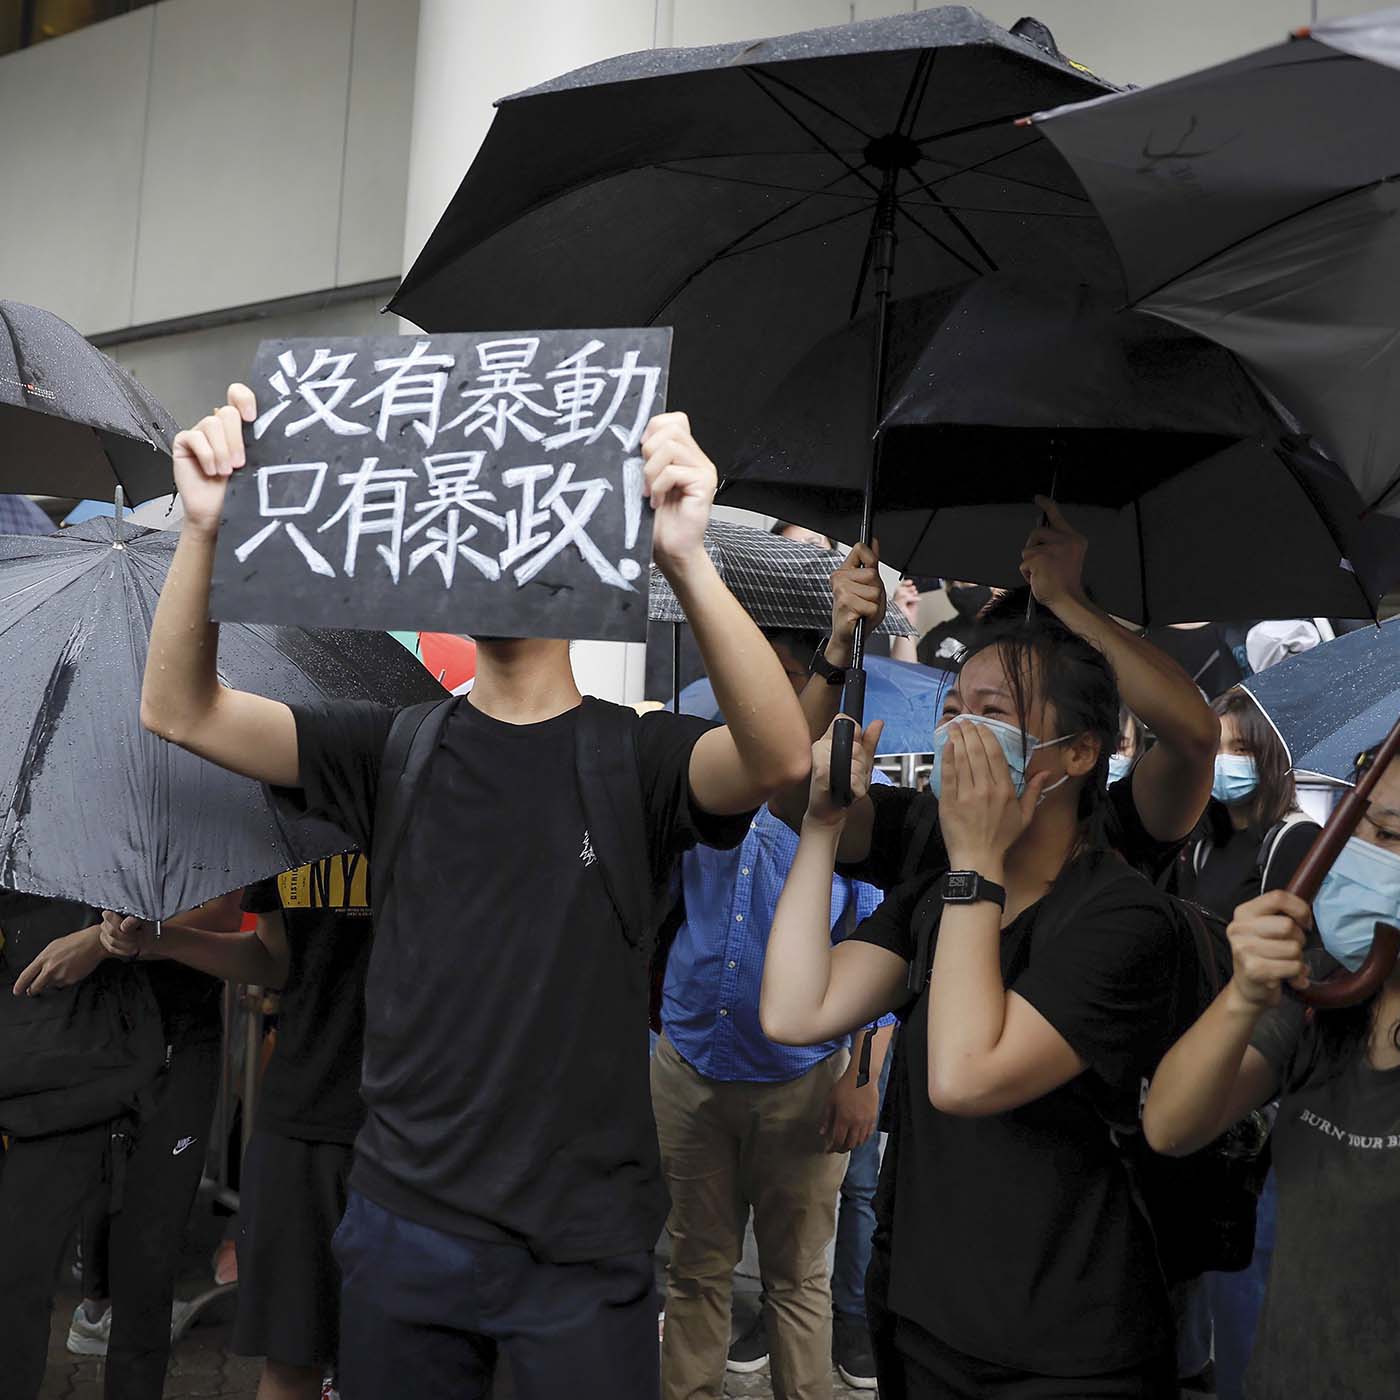 Hong Kong protests: what happens next?